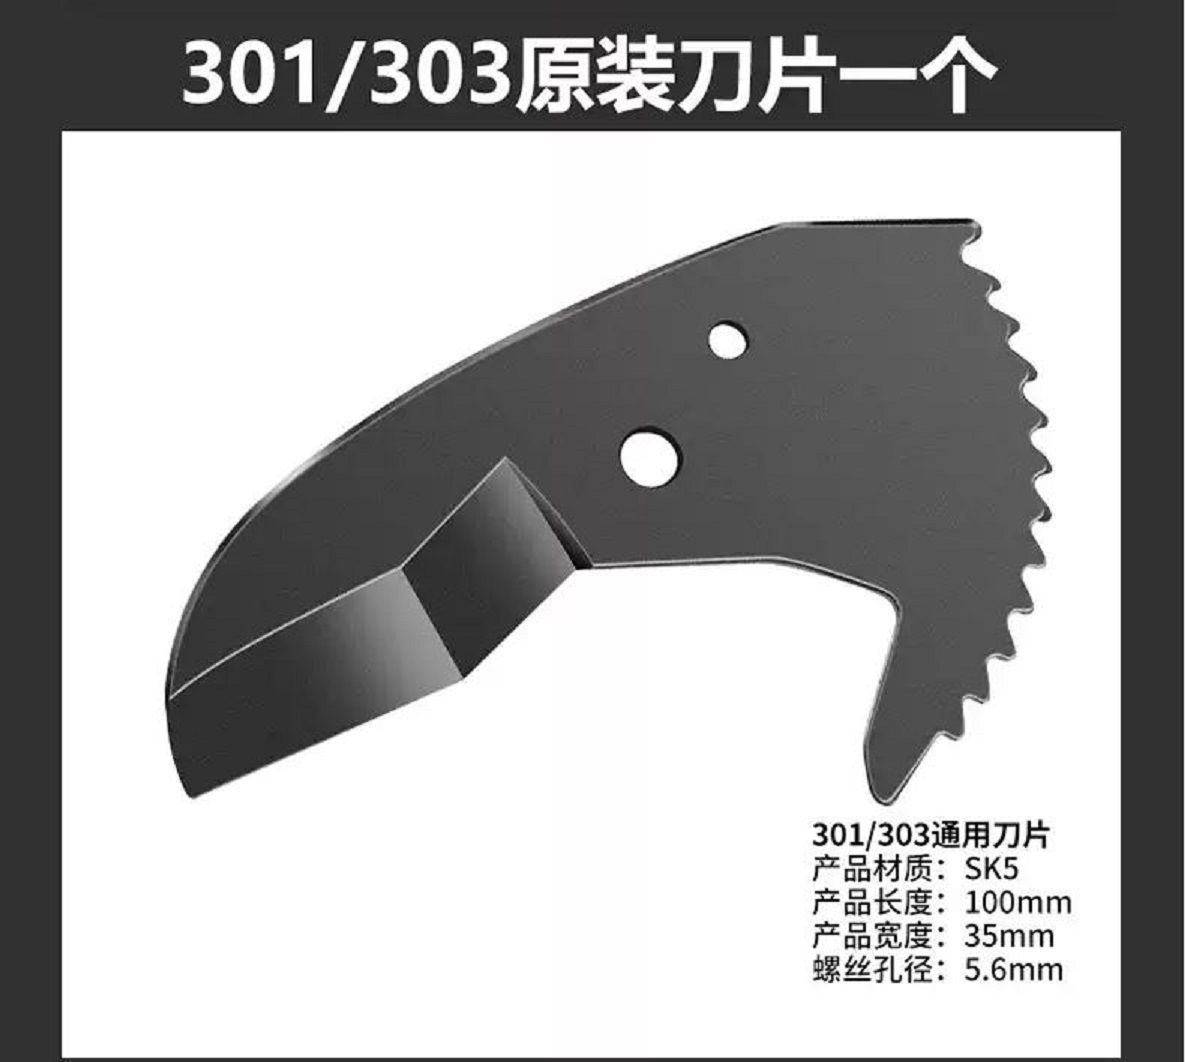 Hình ảnh 2 của mặt hàng Lưỡi dao cắt ống nhựa PVC-303, PVC-301 Berrylion 040408301